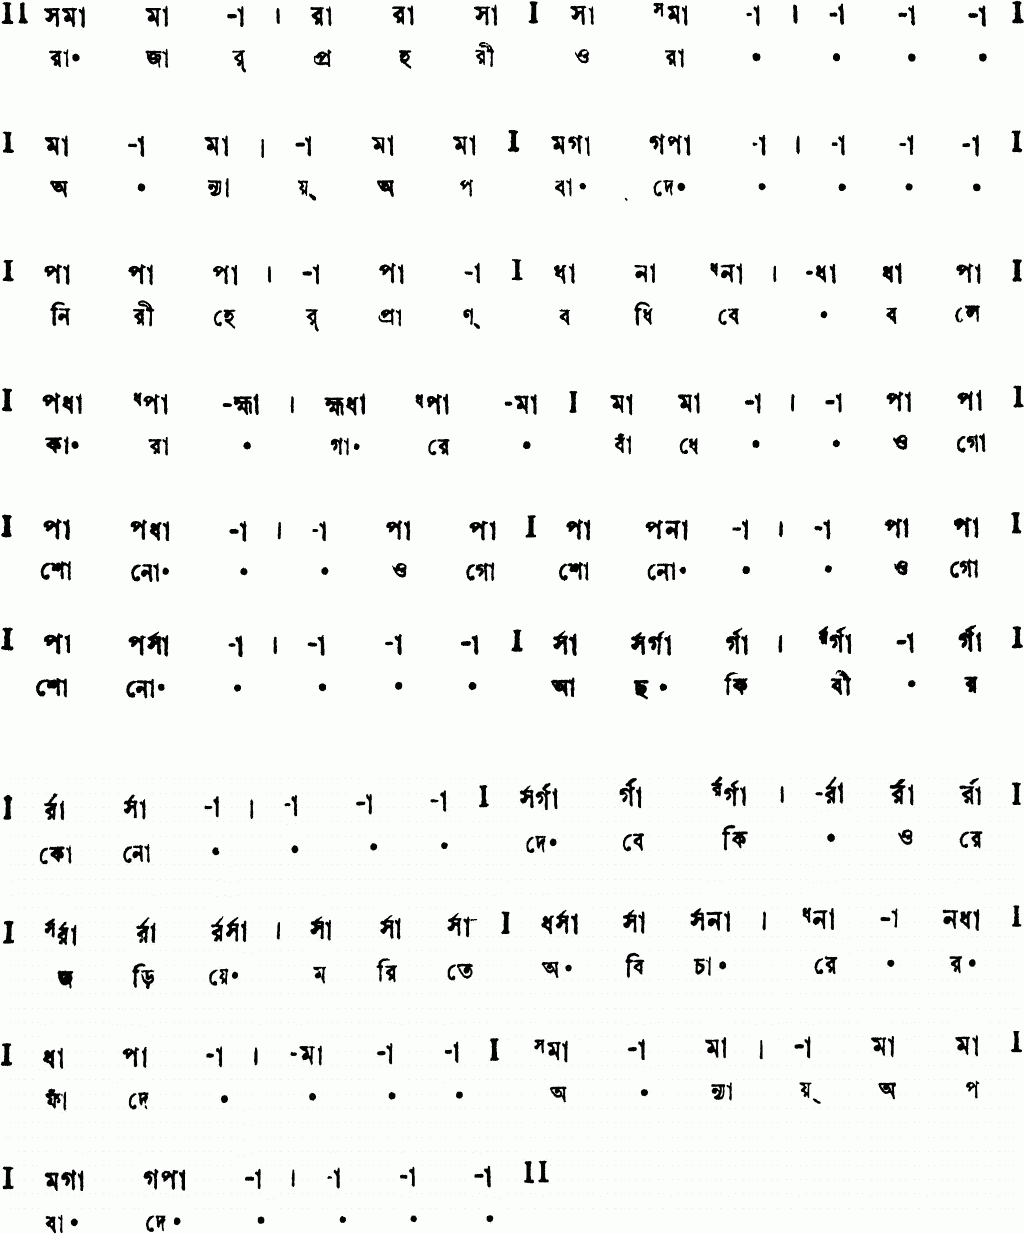 Notation rajar prohari